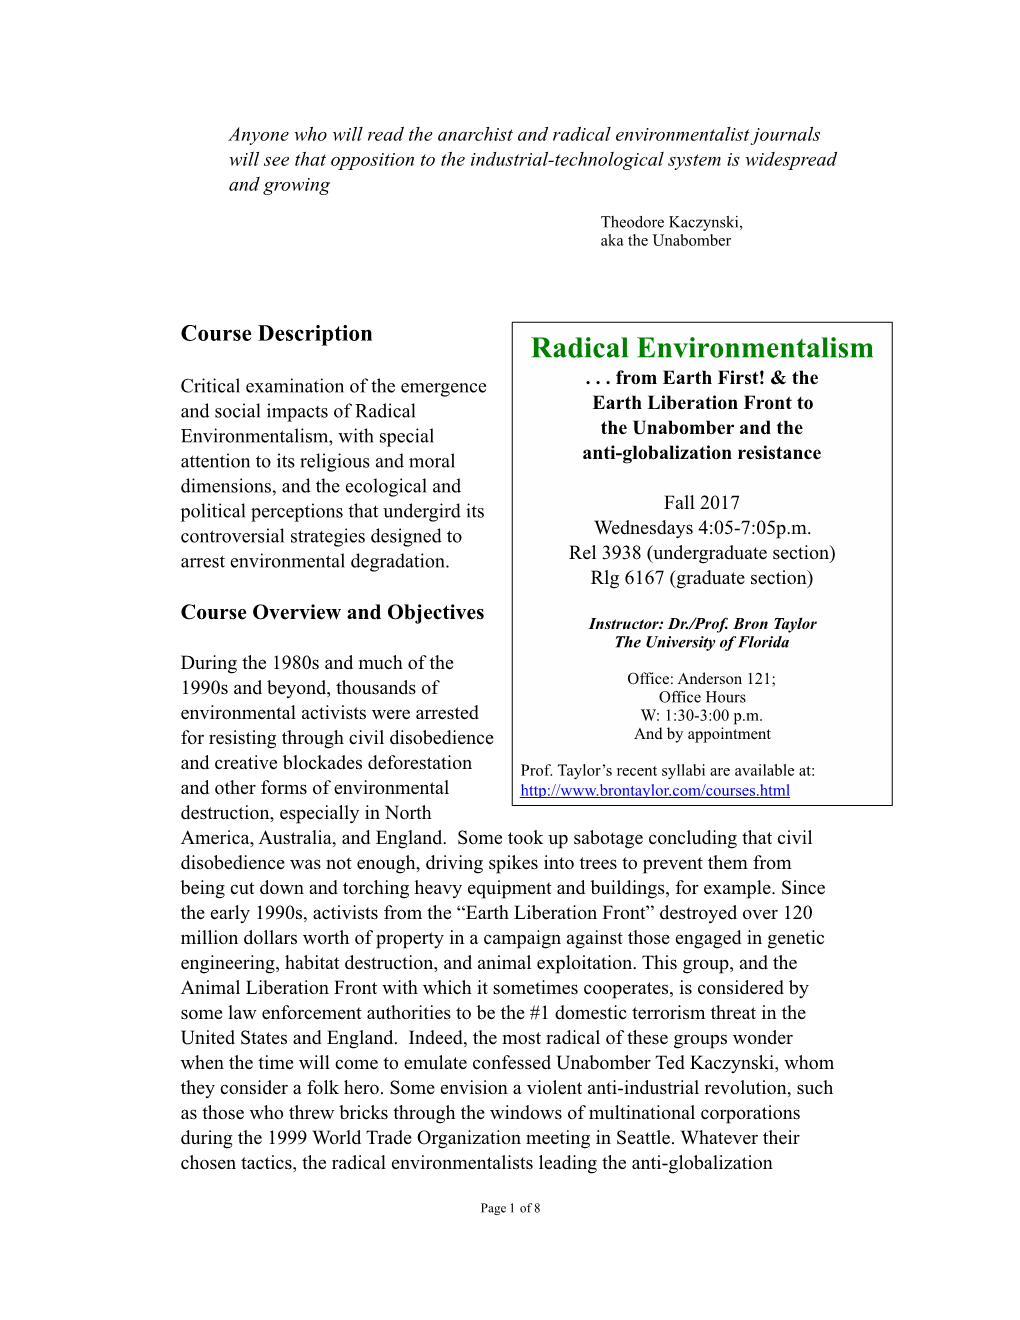 Radical Environmentalism Critical Examination of the Emergence